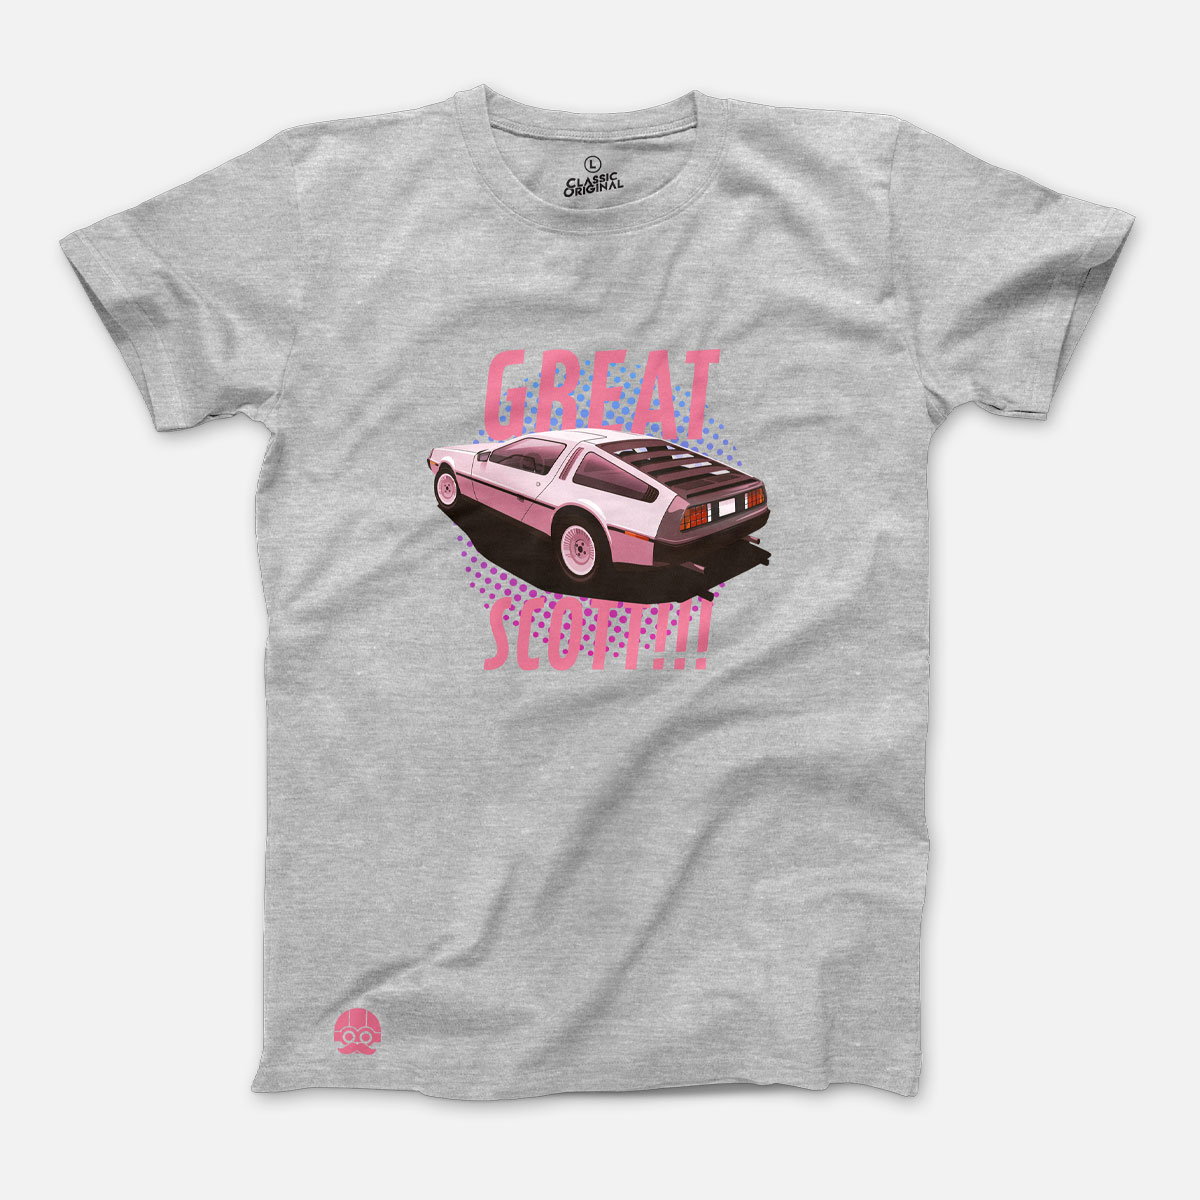 Koszulka z samochodem Delorean DMC-12 dla fanów filmu "Powrót do Przyszłości" - M, Szary